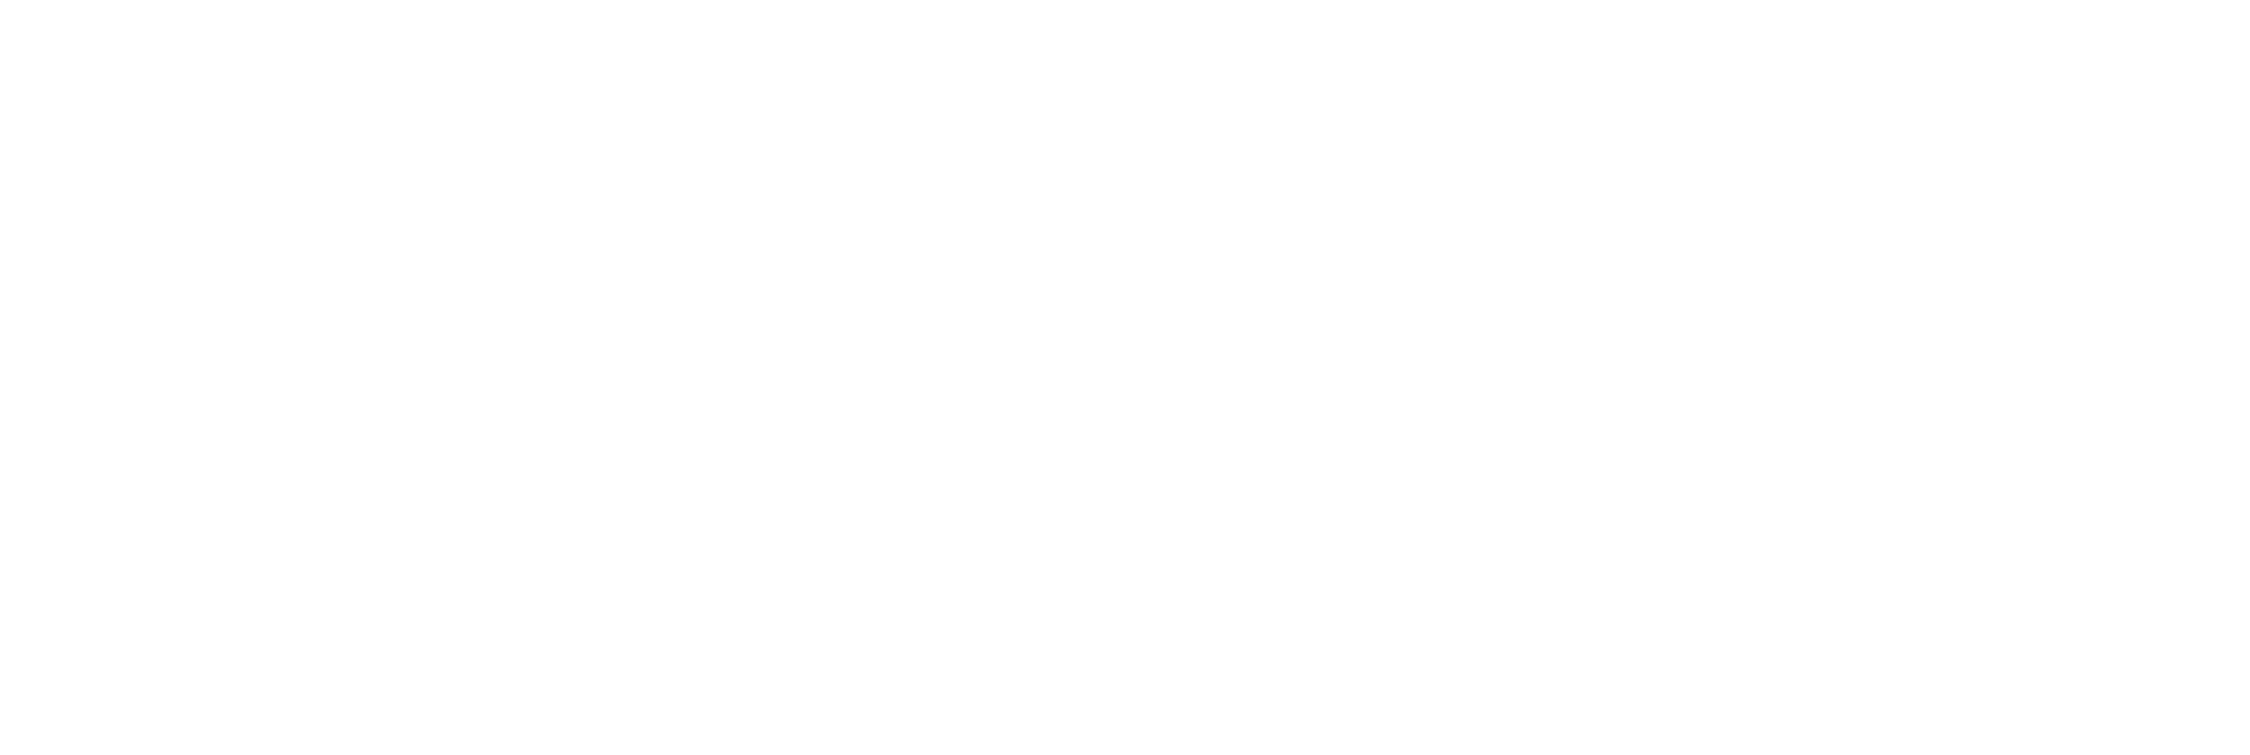 Aviosuperficie Club Astra